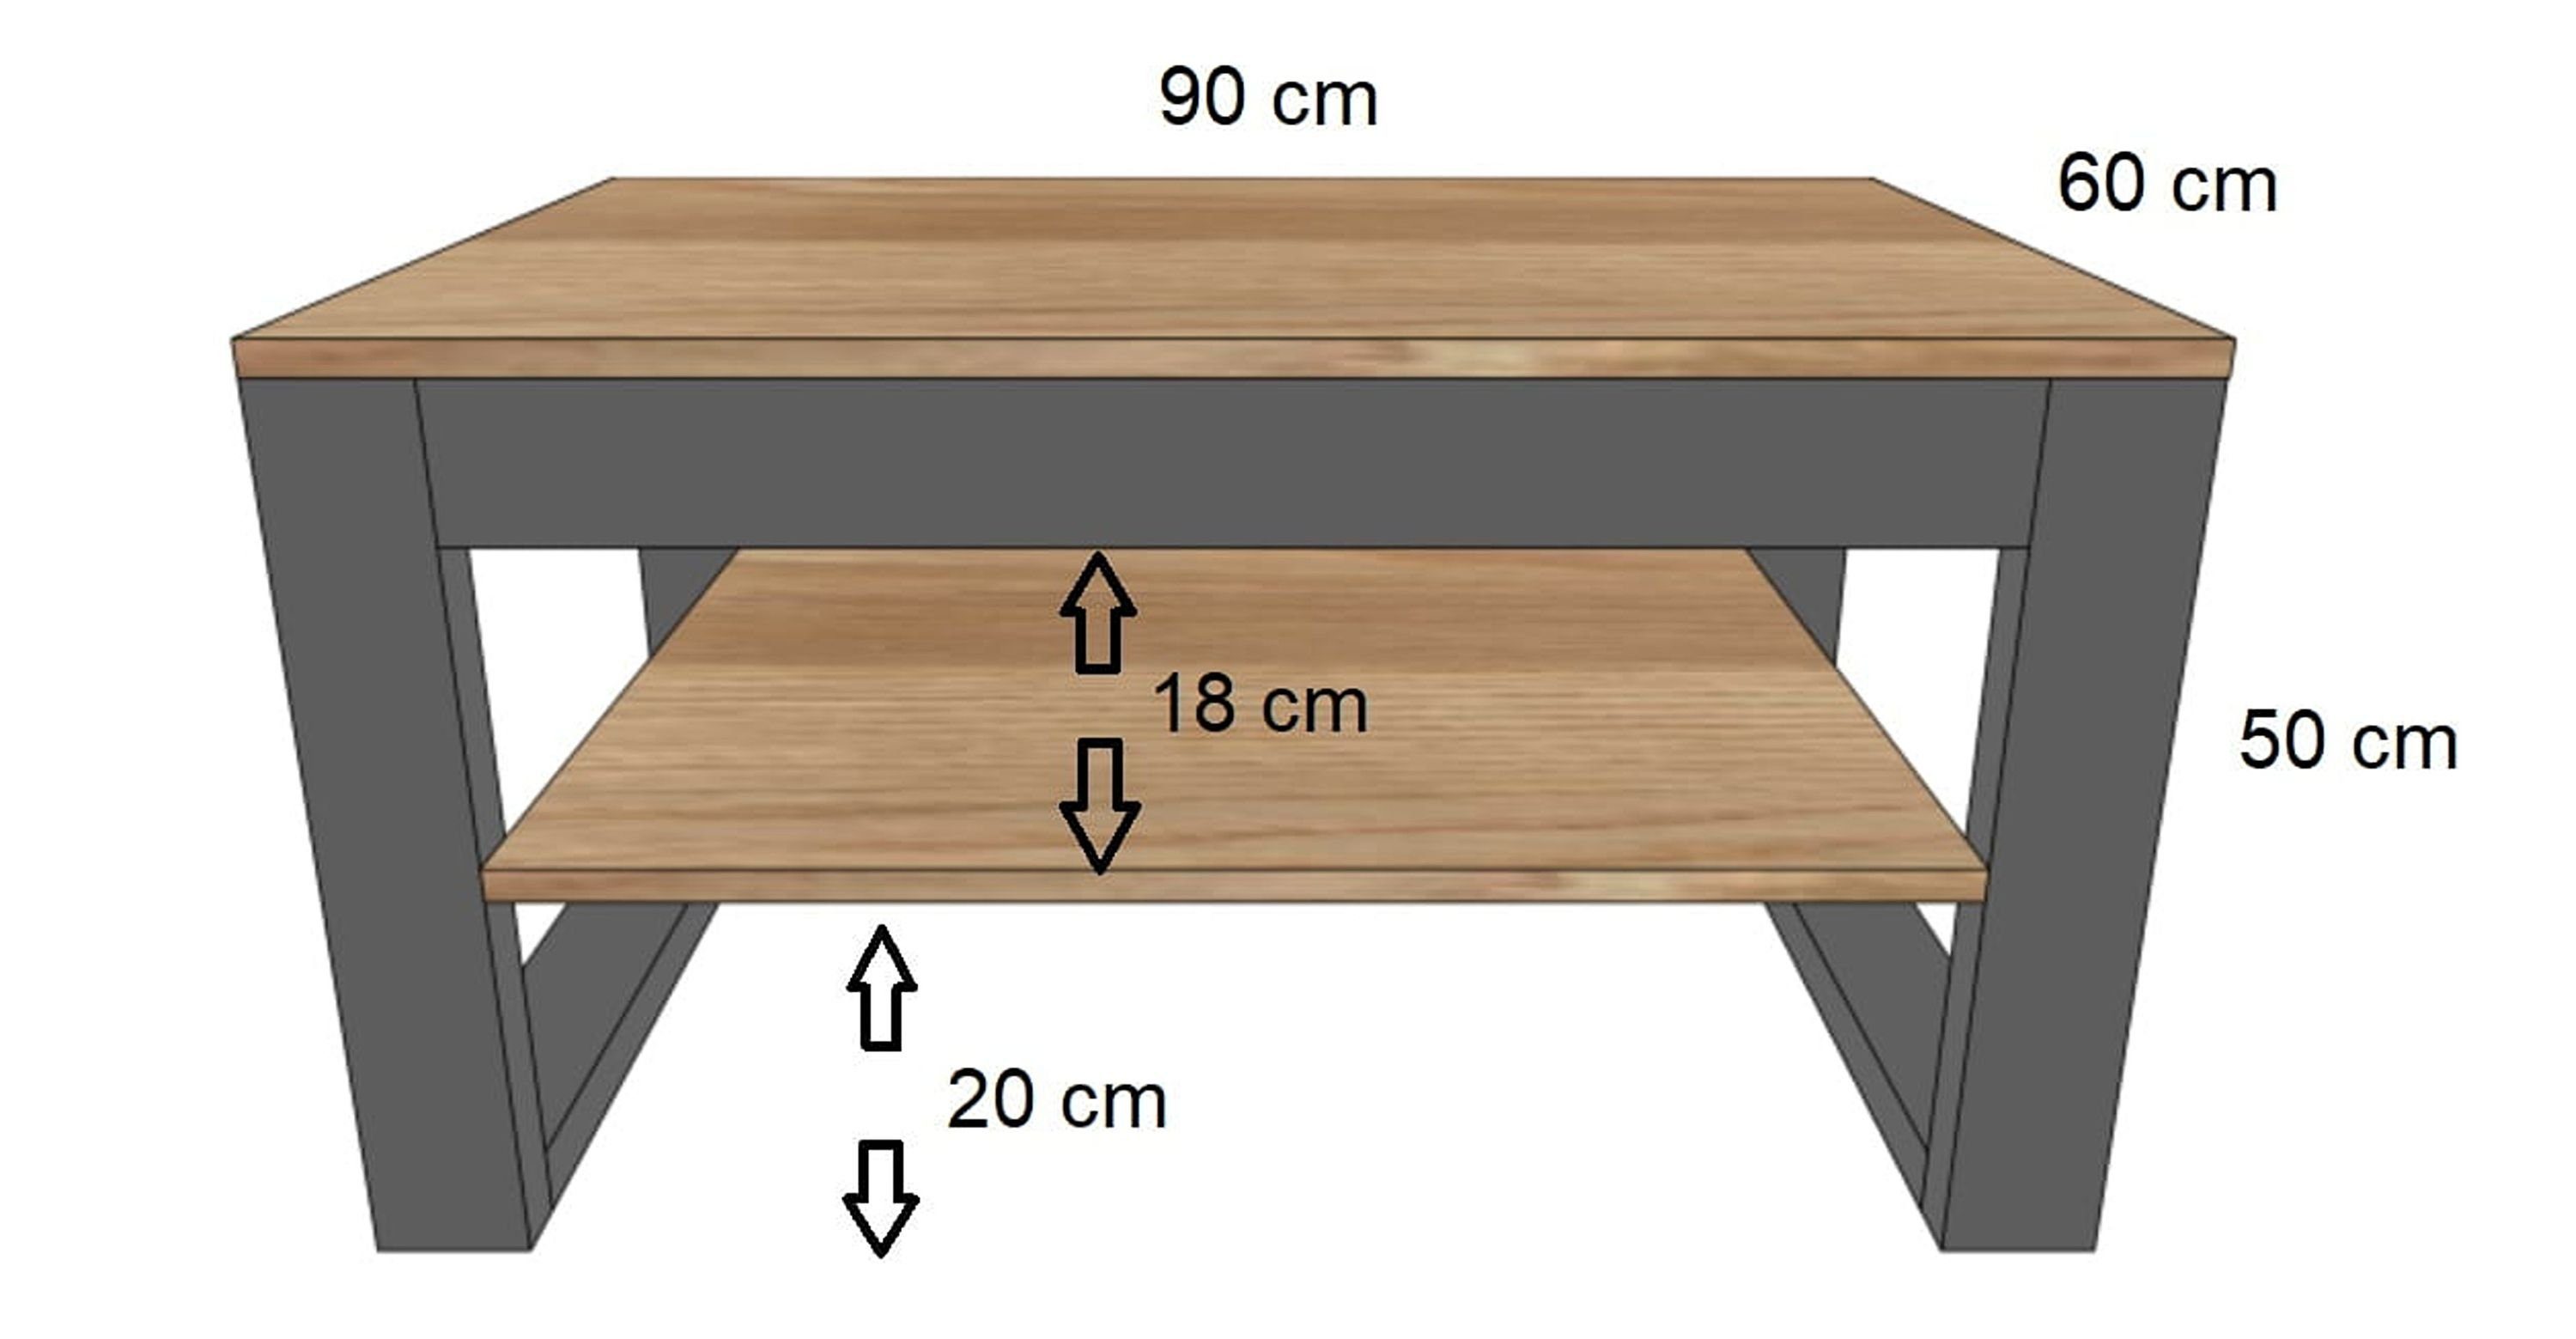 90x50x60cm Schwarz - Wohnzimmertisch Couchtisch designimpex Tisch DA-222 Design Couchtisch Beton